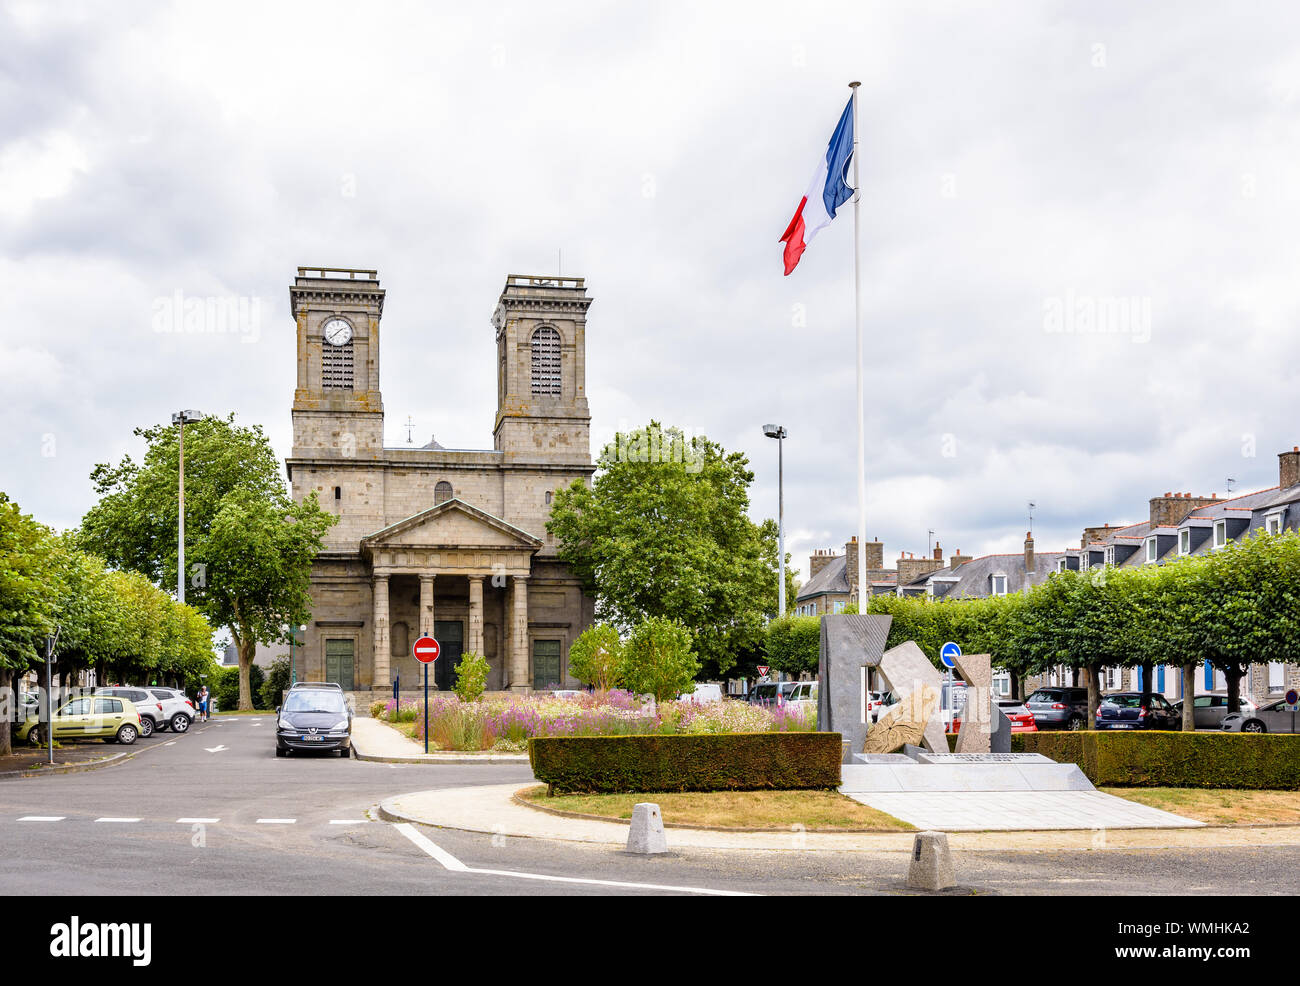 Vista generale del luogo Saint-Michel di Saint-Brieuc, Francia, con il memoriale della resistenza e della deportazione e la chiesa di Saint Michel. Foto Stock